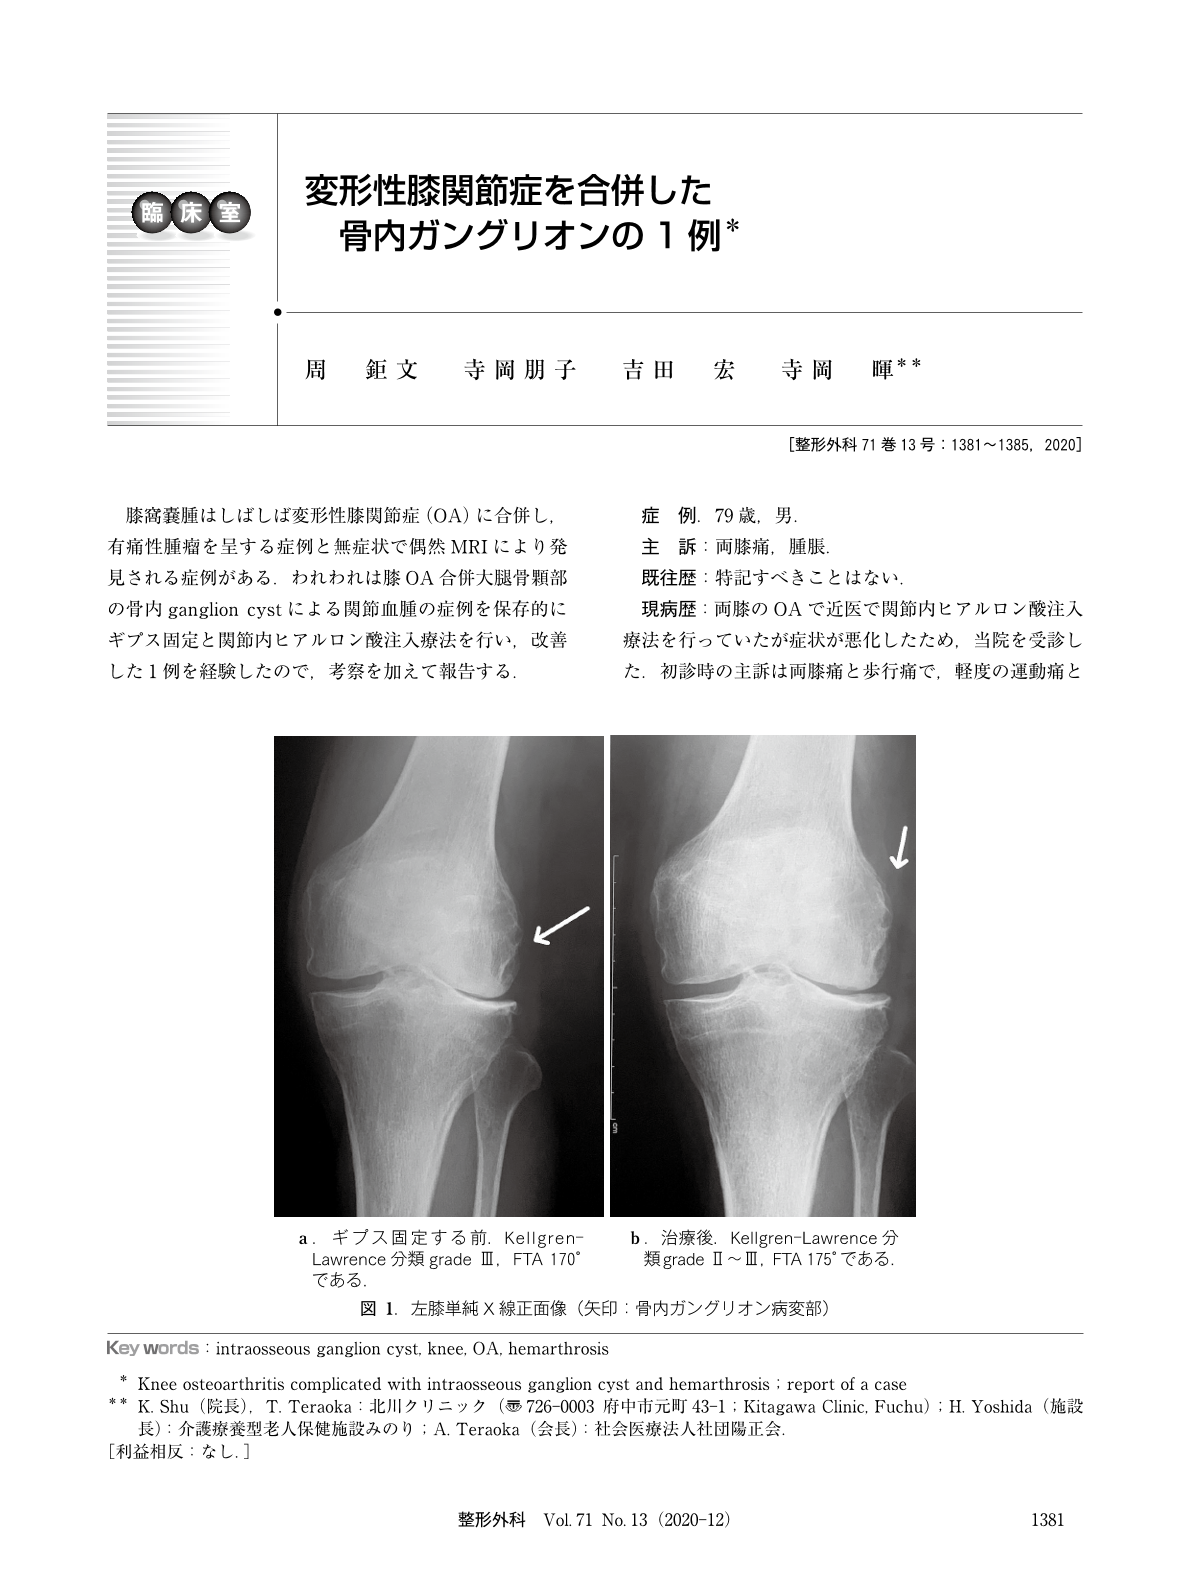 変形性膝関節症を合併した骨内ガングリオンの1例 臨床雑誌整形外科 71巻13号 医書 Jp